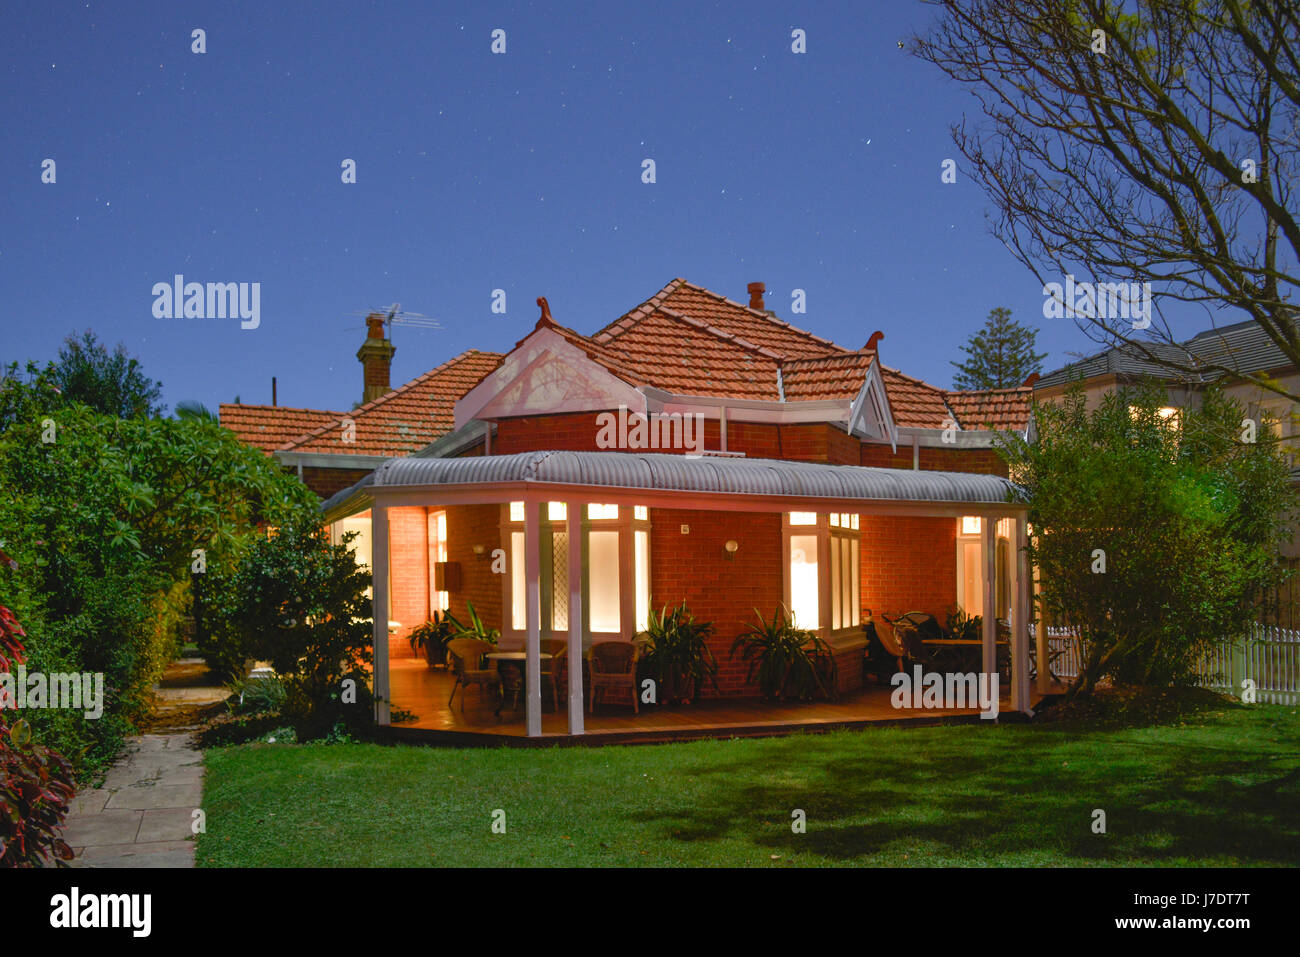 Élégante typique du début des années 1900, Australian home avec véranda, boudins, photographiés sous la pleine lune. Perth, Australie occidentale. Banque D'Images